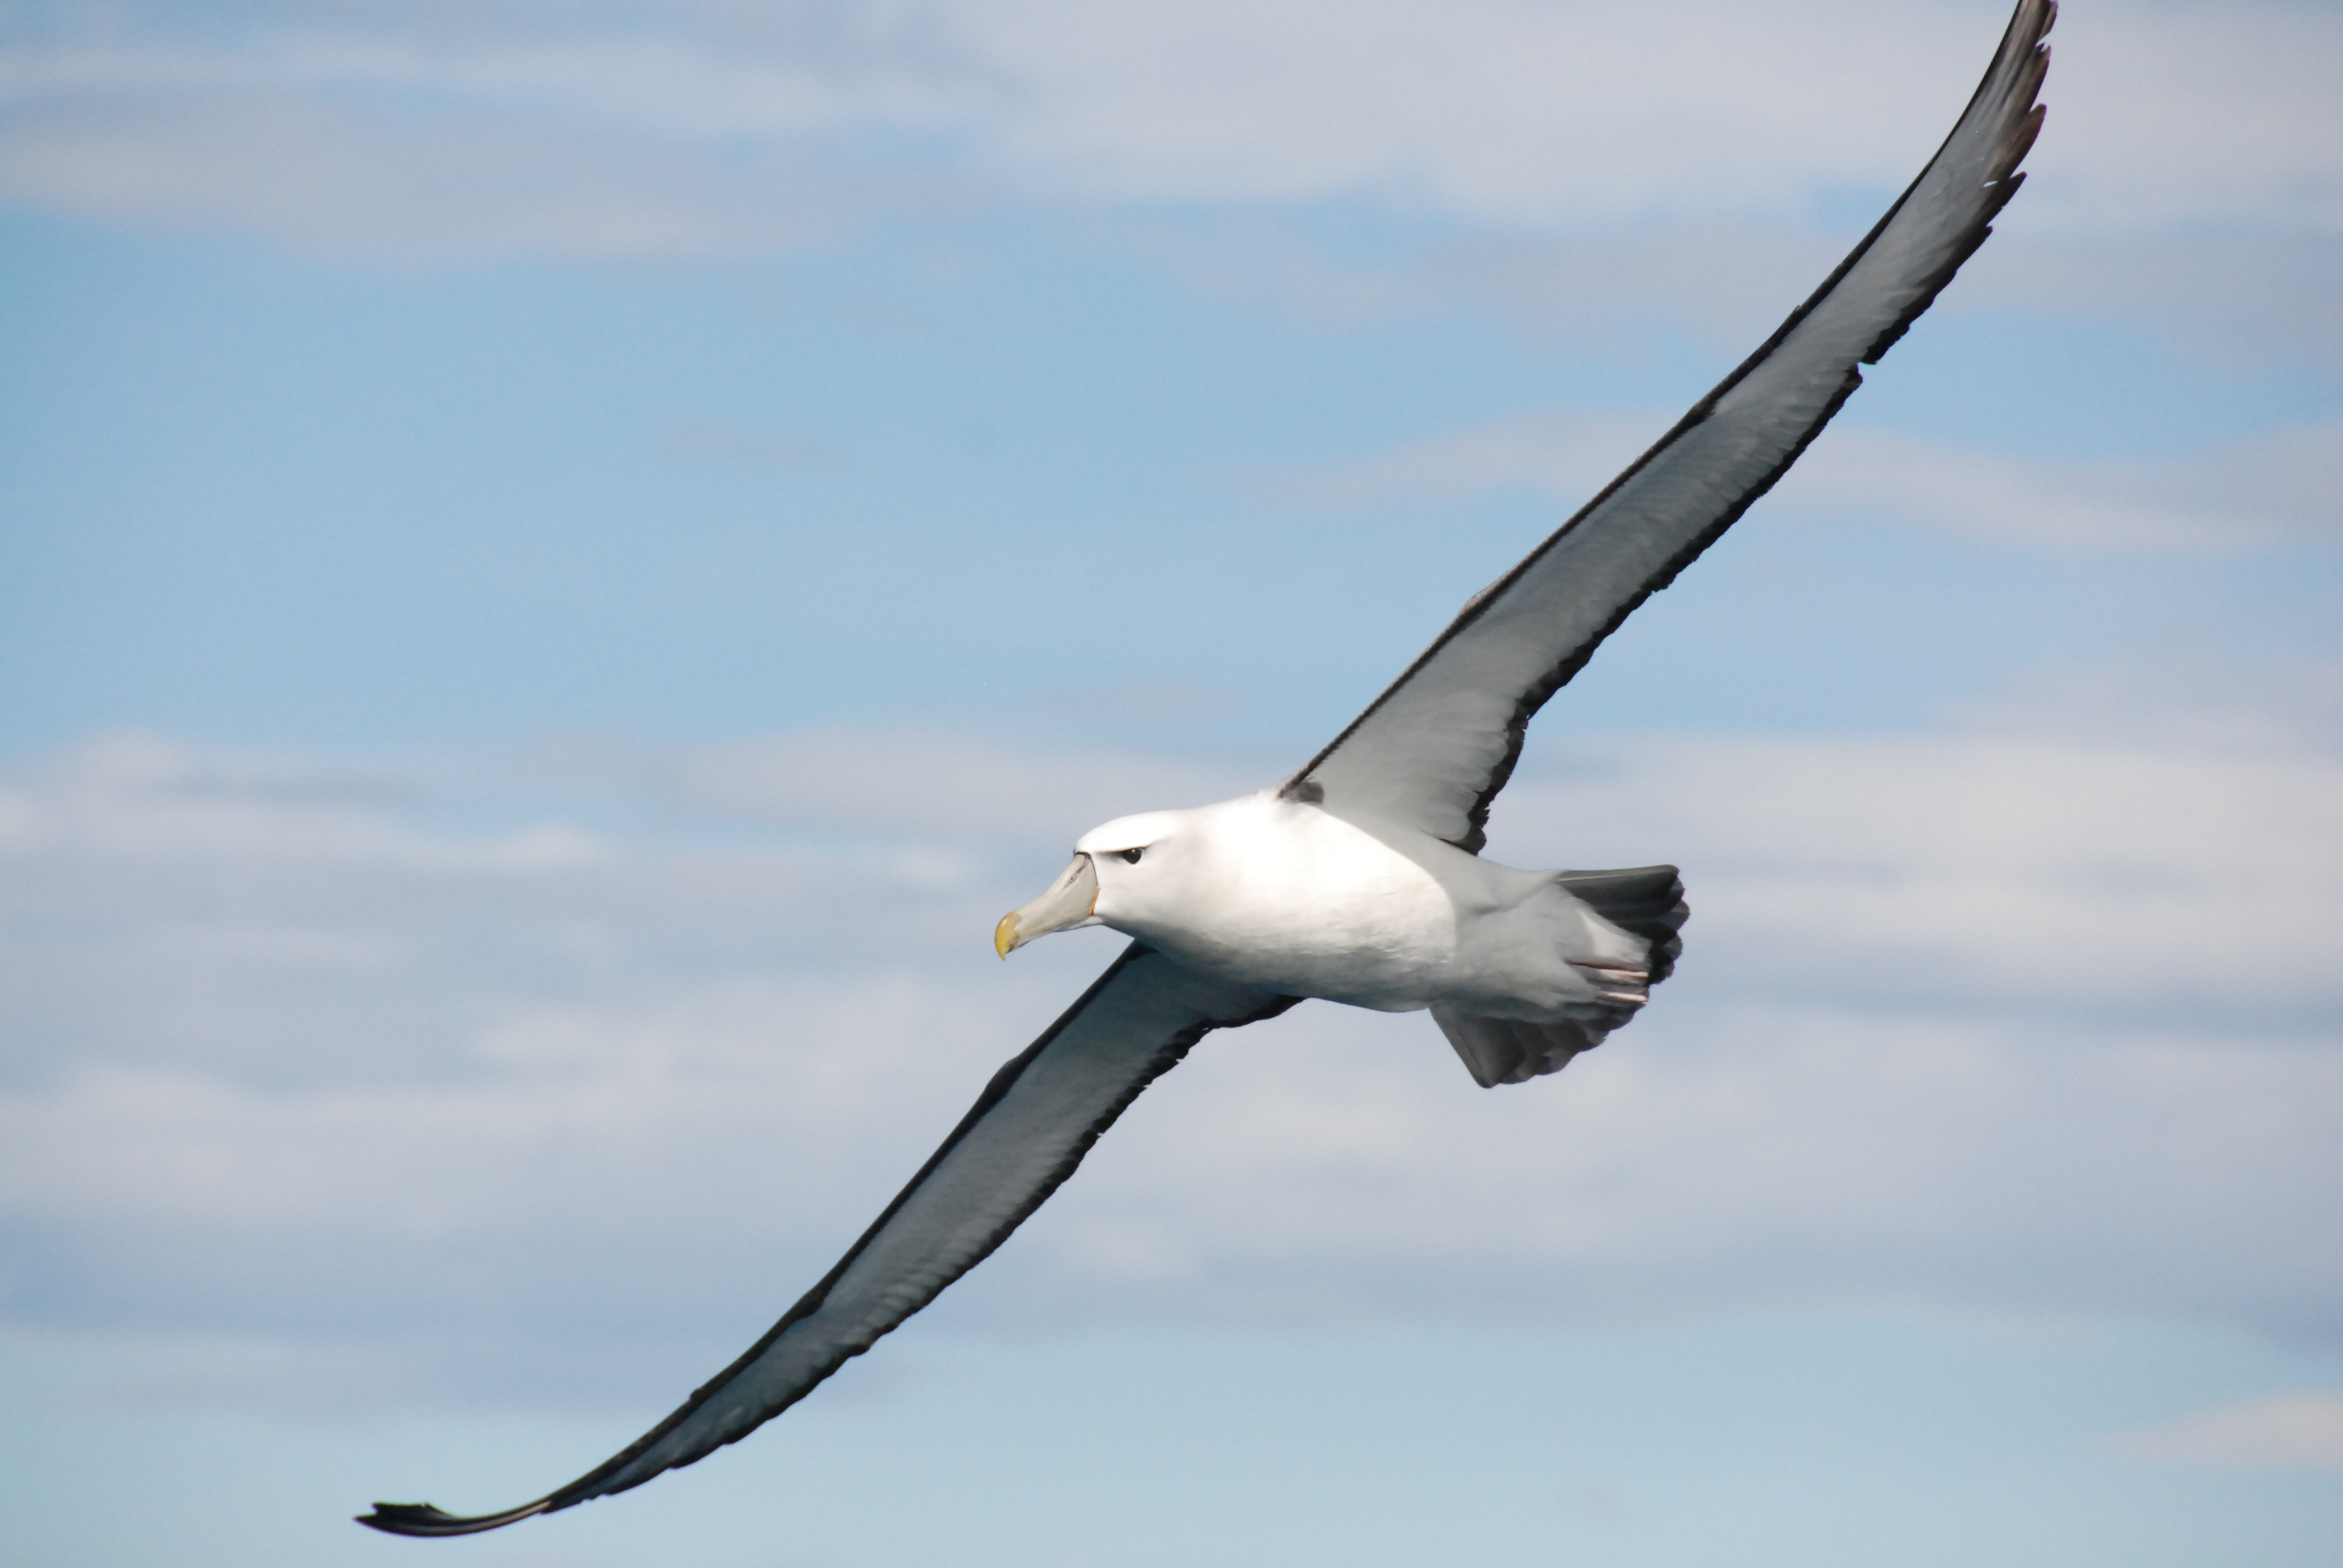 Albatross: Owner of the Longest Wings